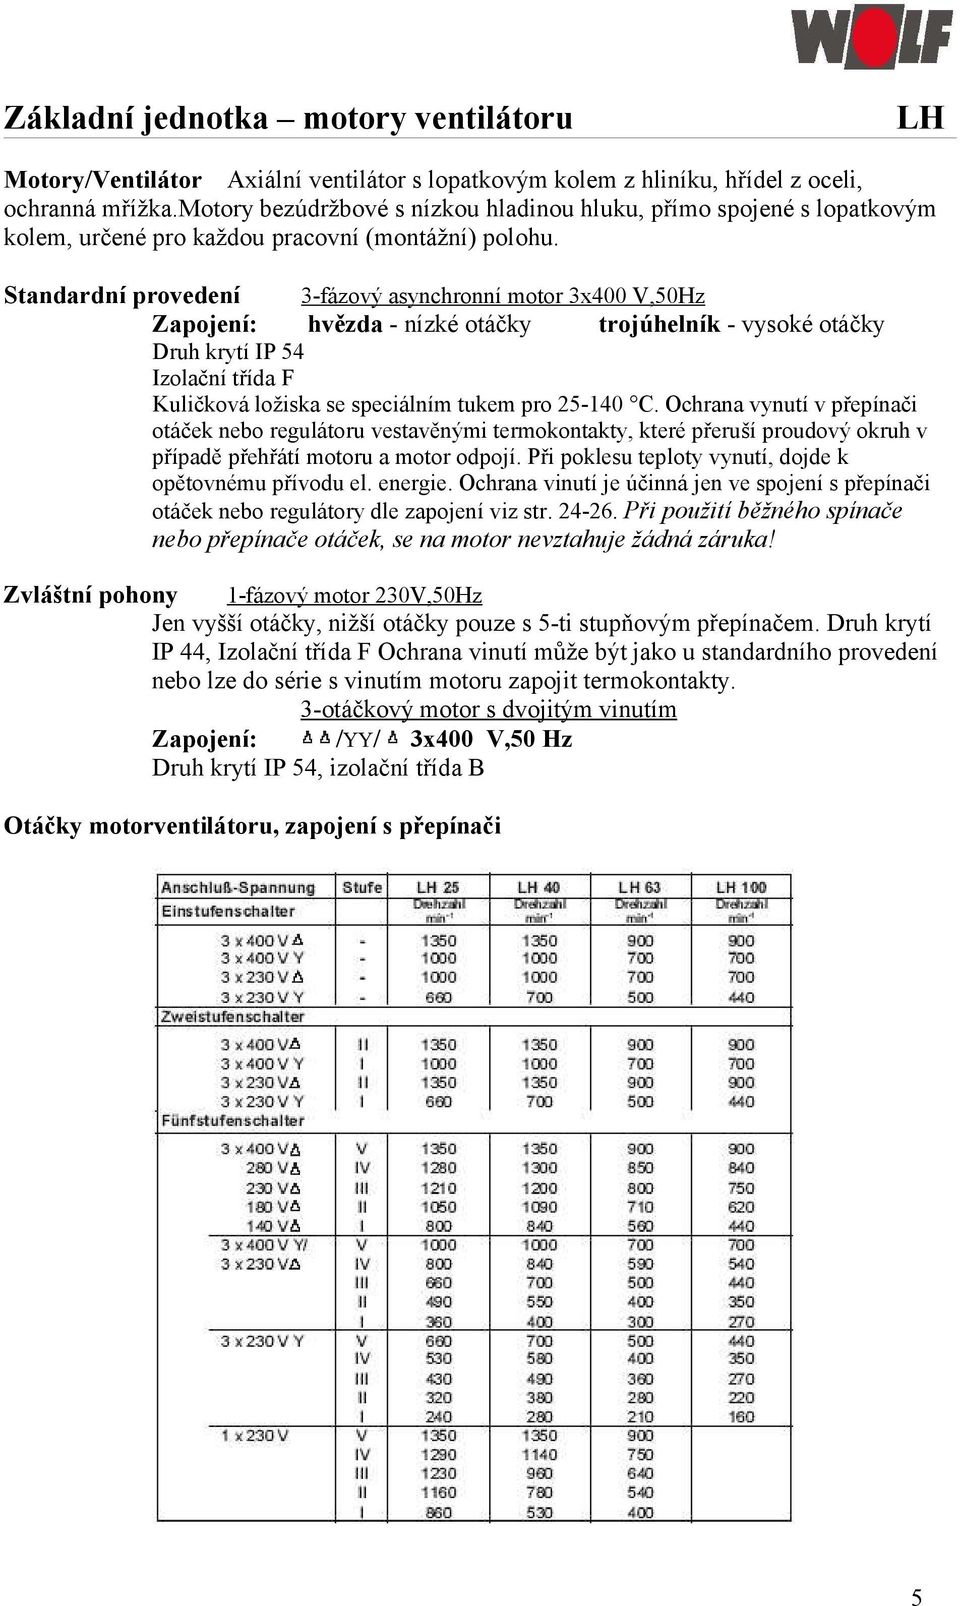 Standardní provedení Zapojení: 3-fázový asynchronní motor 3x400 V,50Hz hvězda - nízké otáčky trojúhelník - vysoké otáčky Druh krytí IP 54 Izolační třída F Kuličková ložiska se speciálním tukem pro